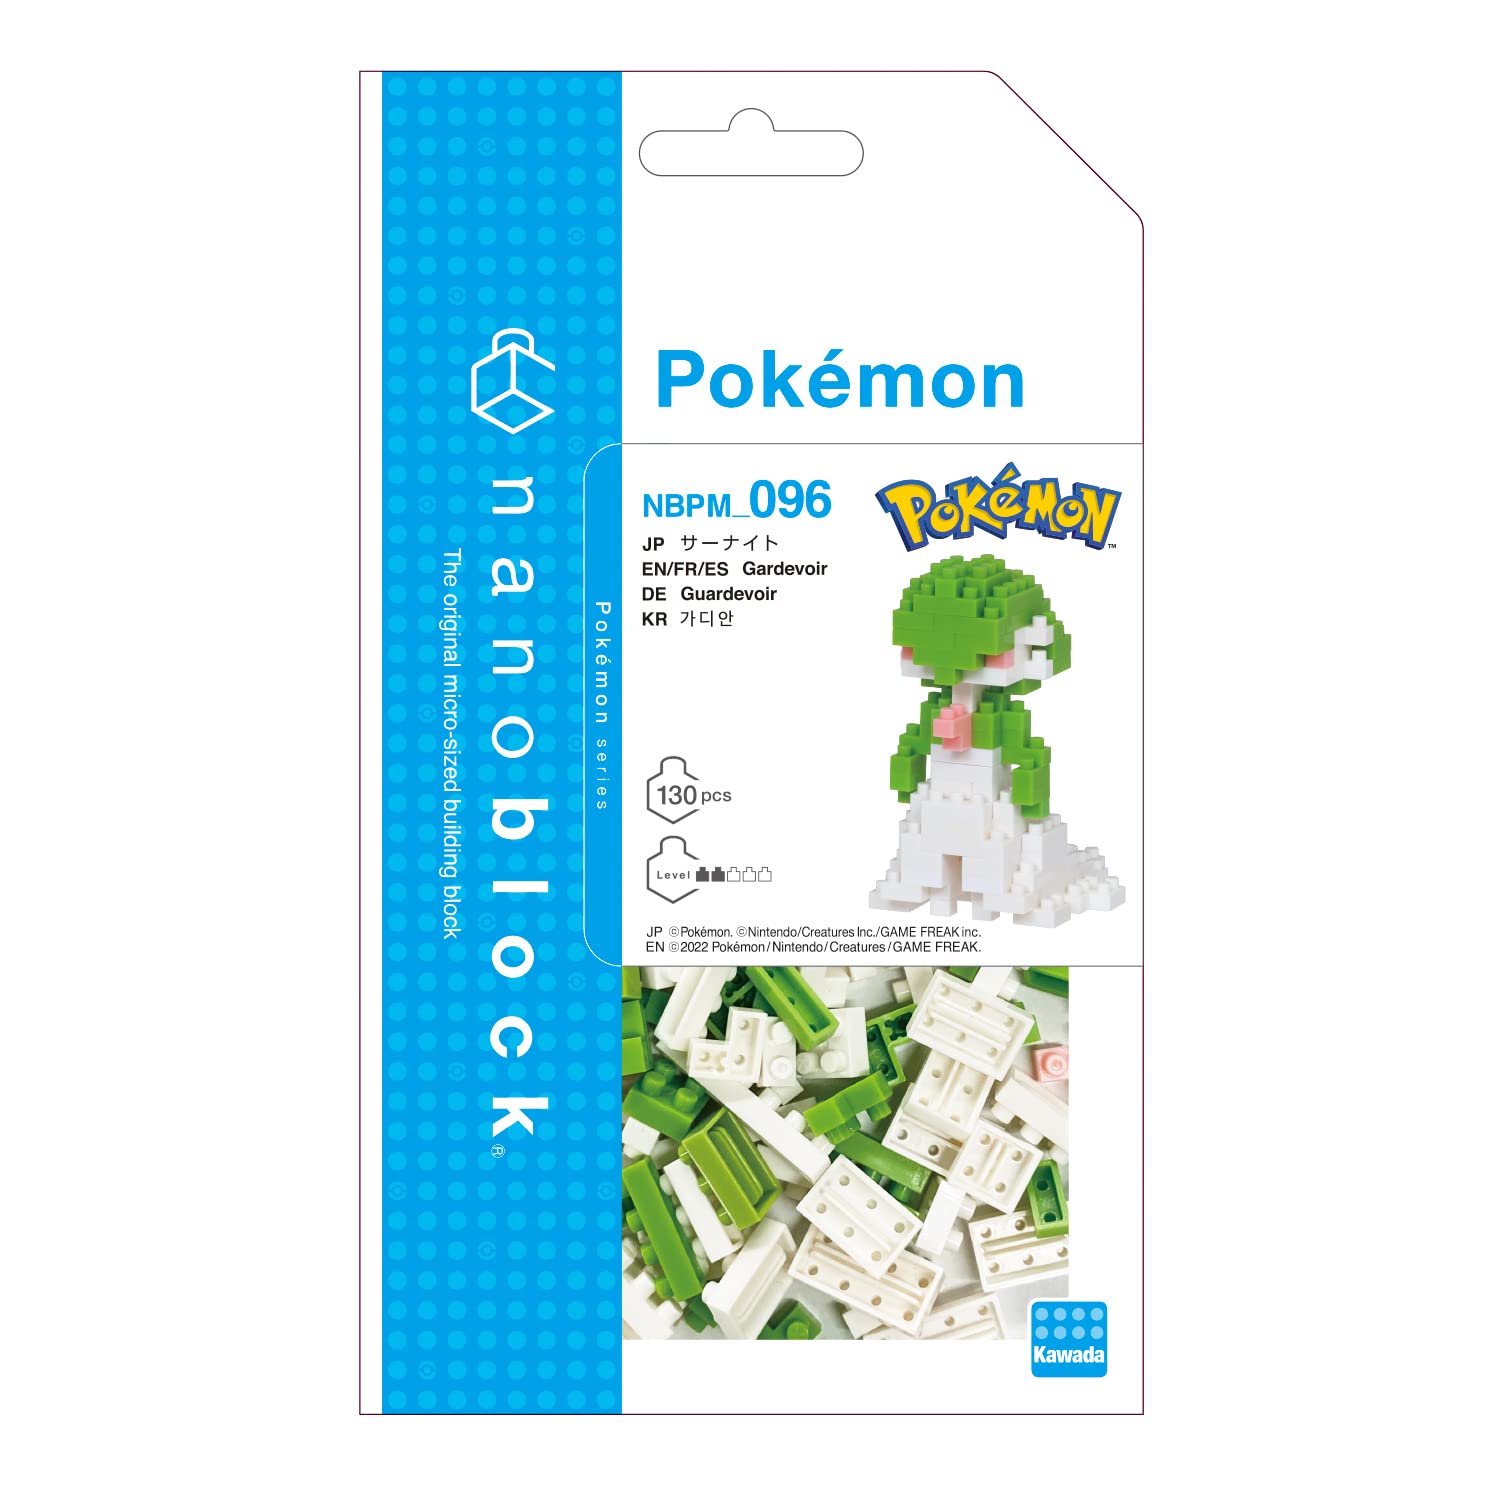 nanoblock - Pokémon - Gardevoir, Pokémon Series Building Kit